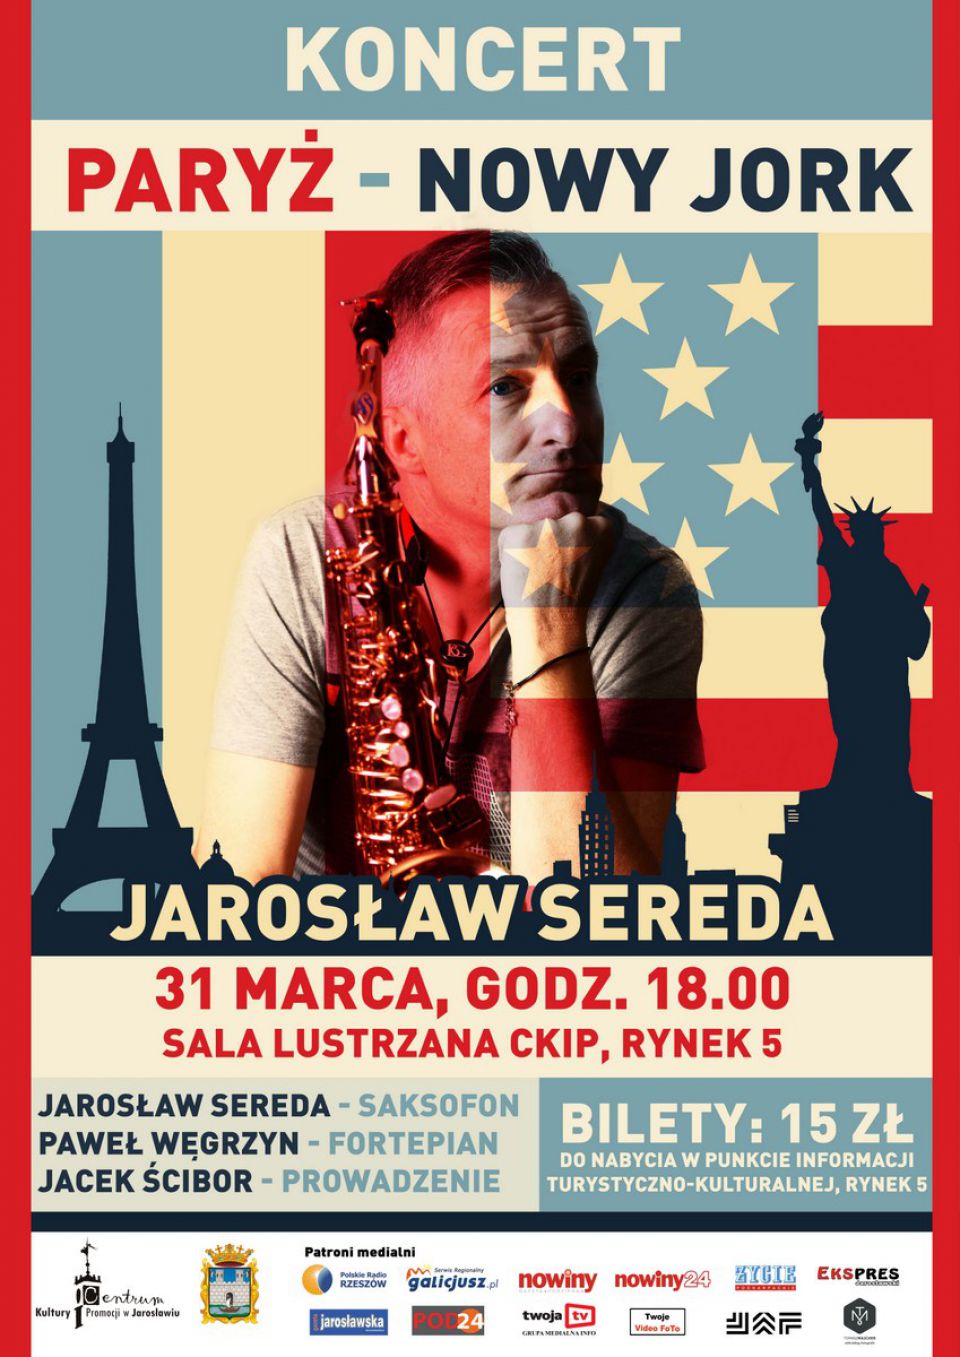 Paryż - Nowy Jork - Jarosław